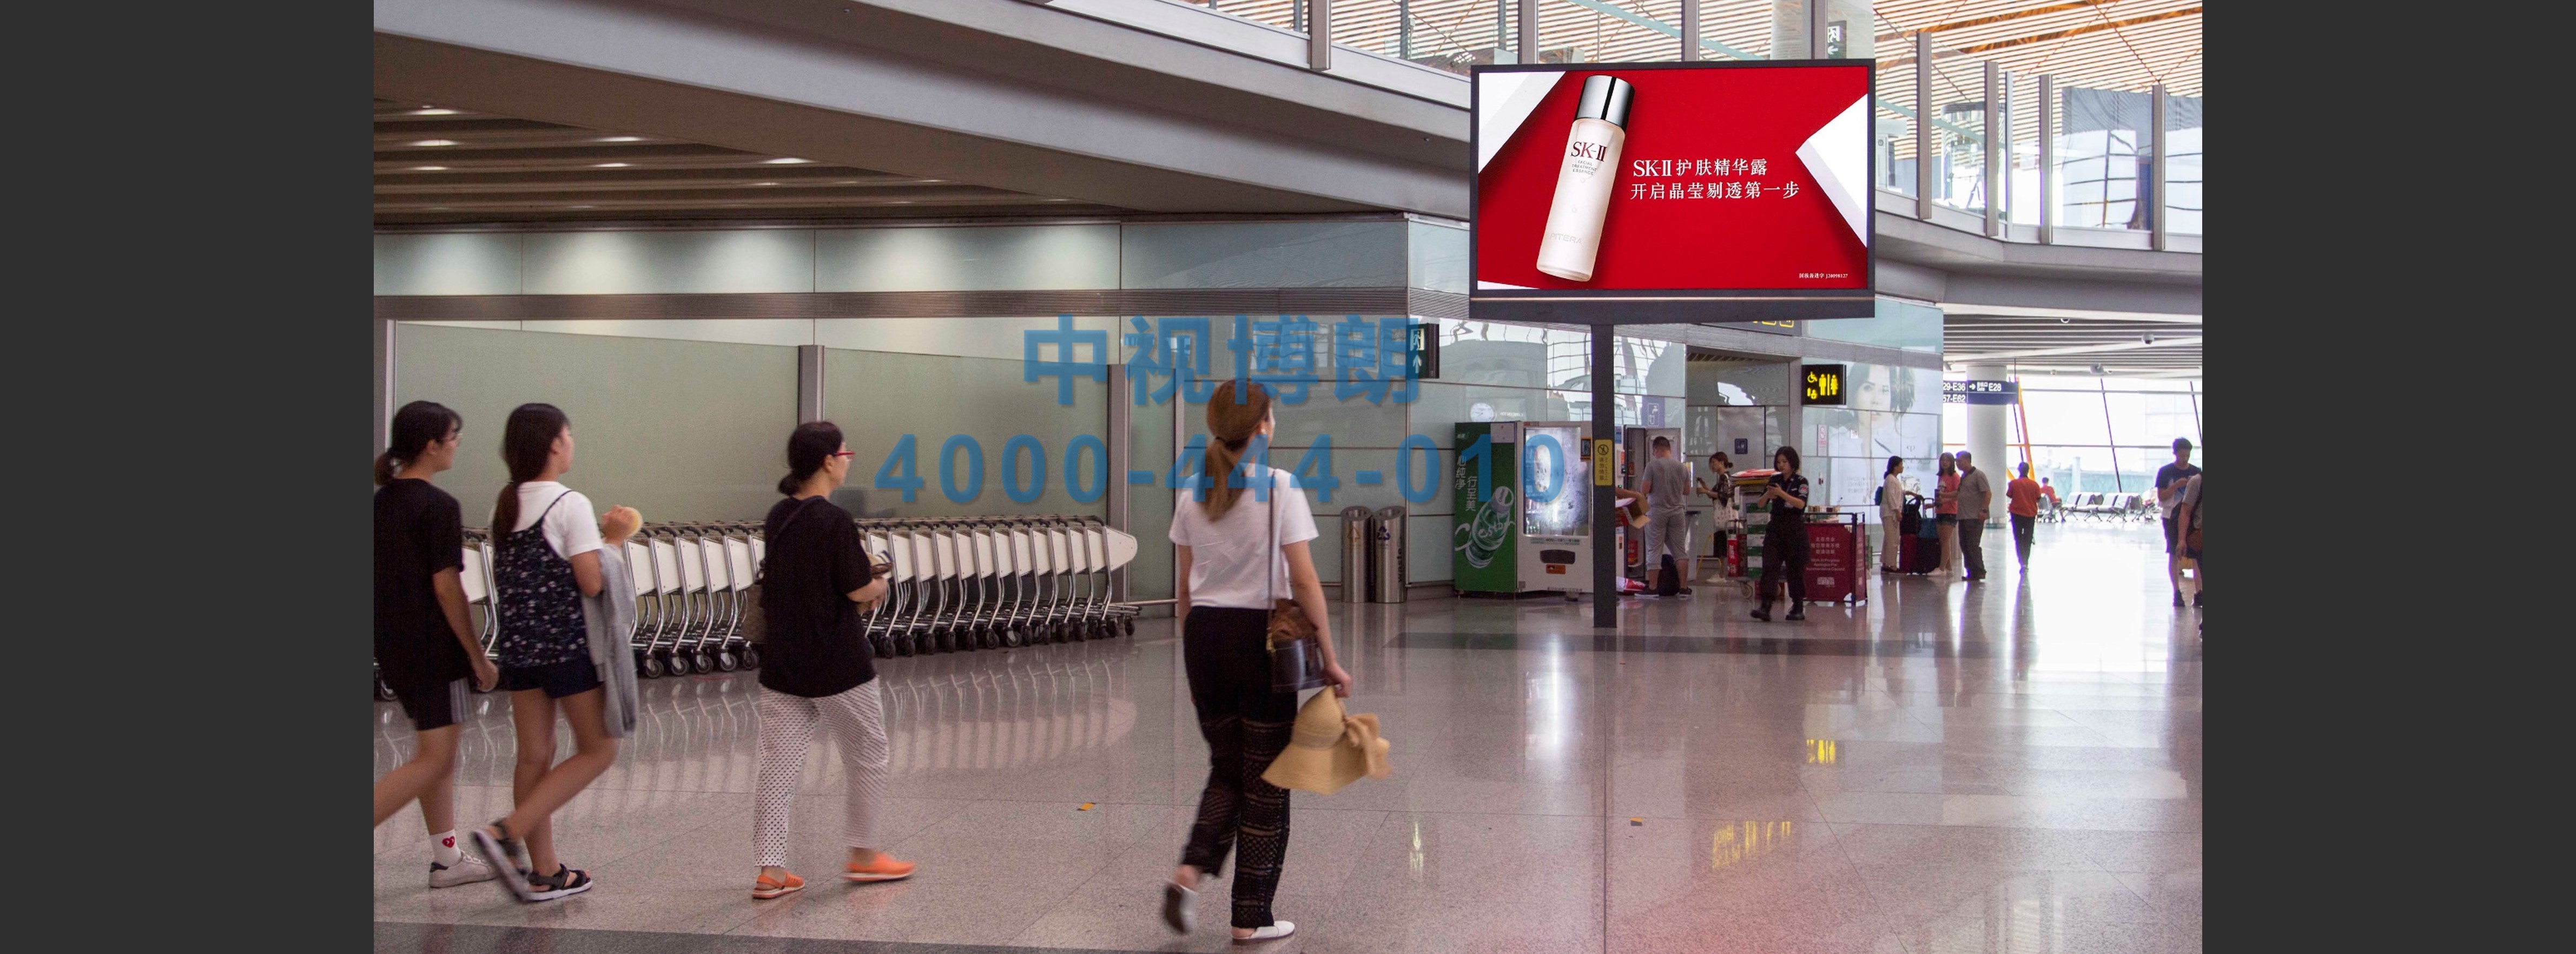 北京首都机场广告-T3国际出发免税区高处LED屏